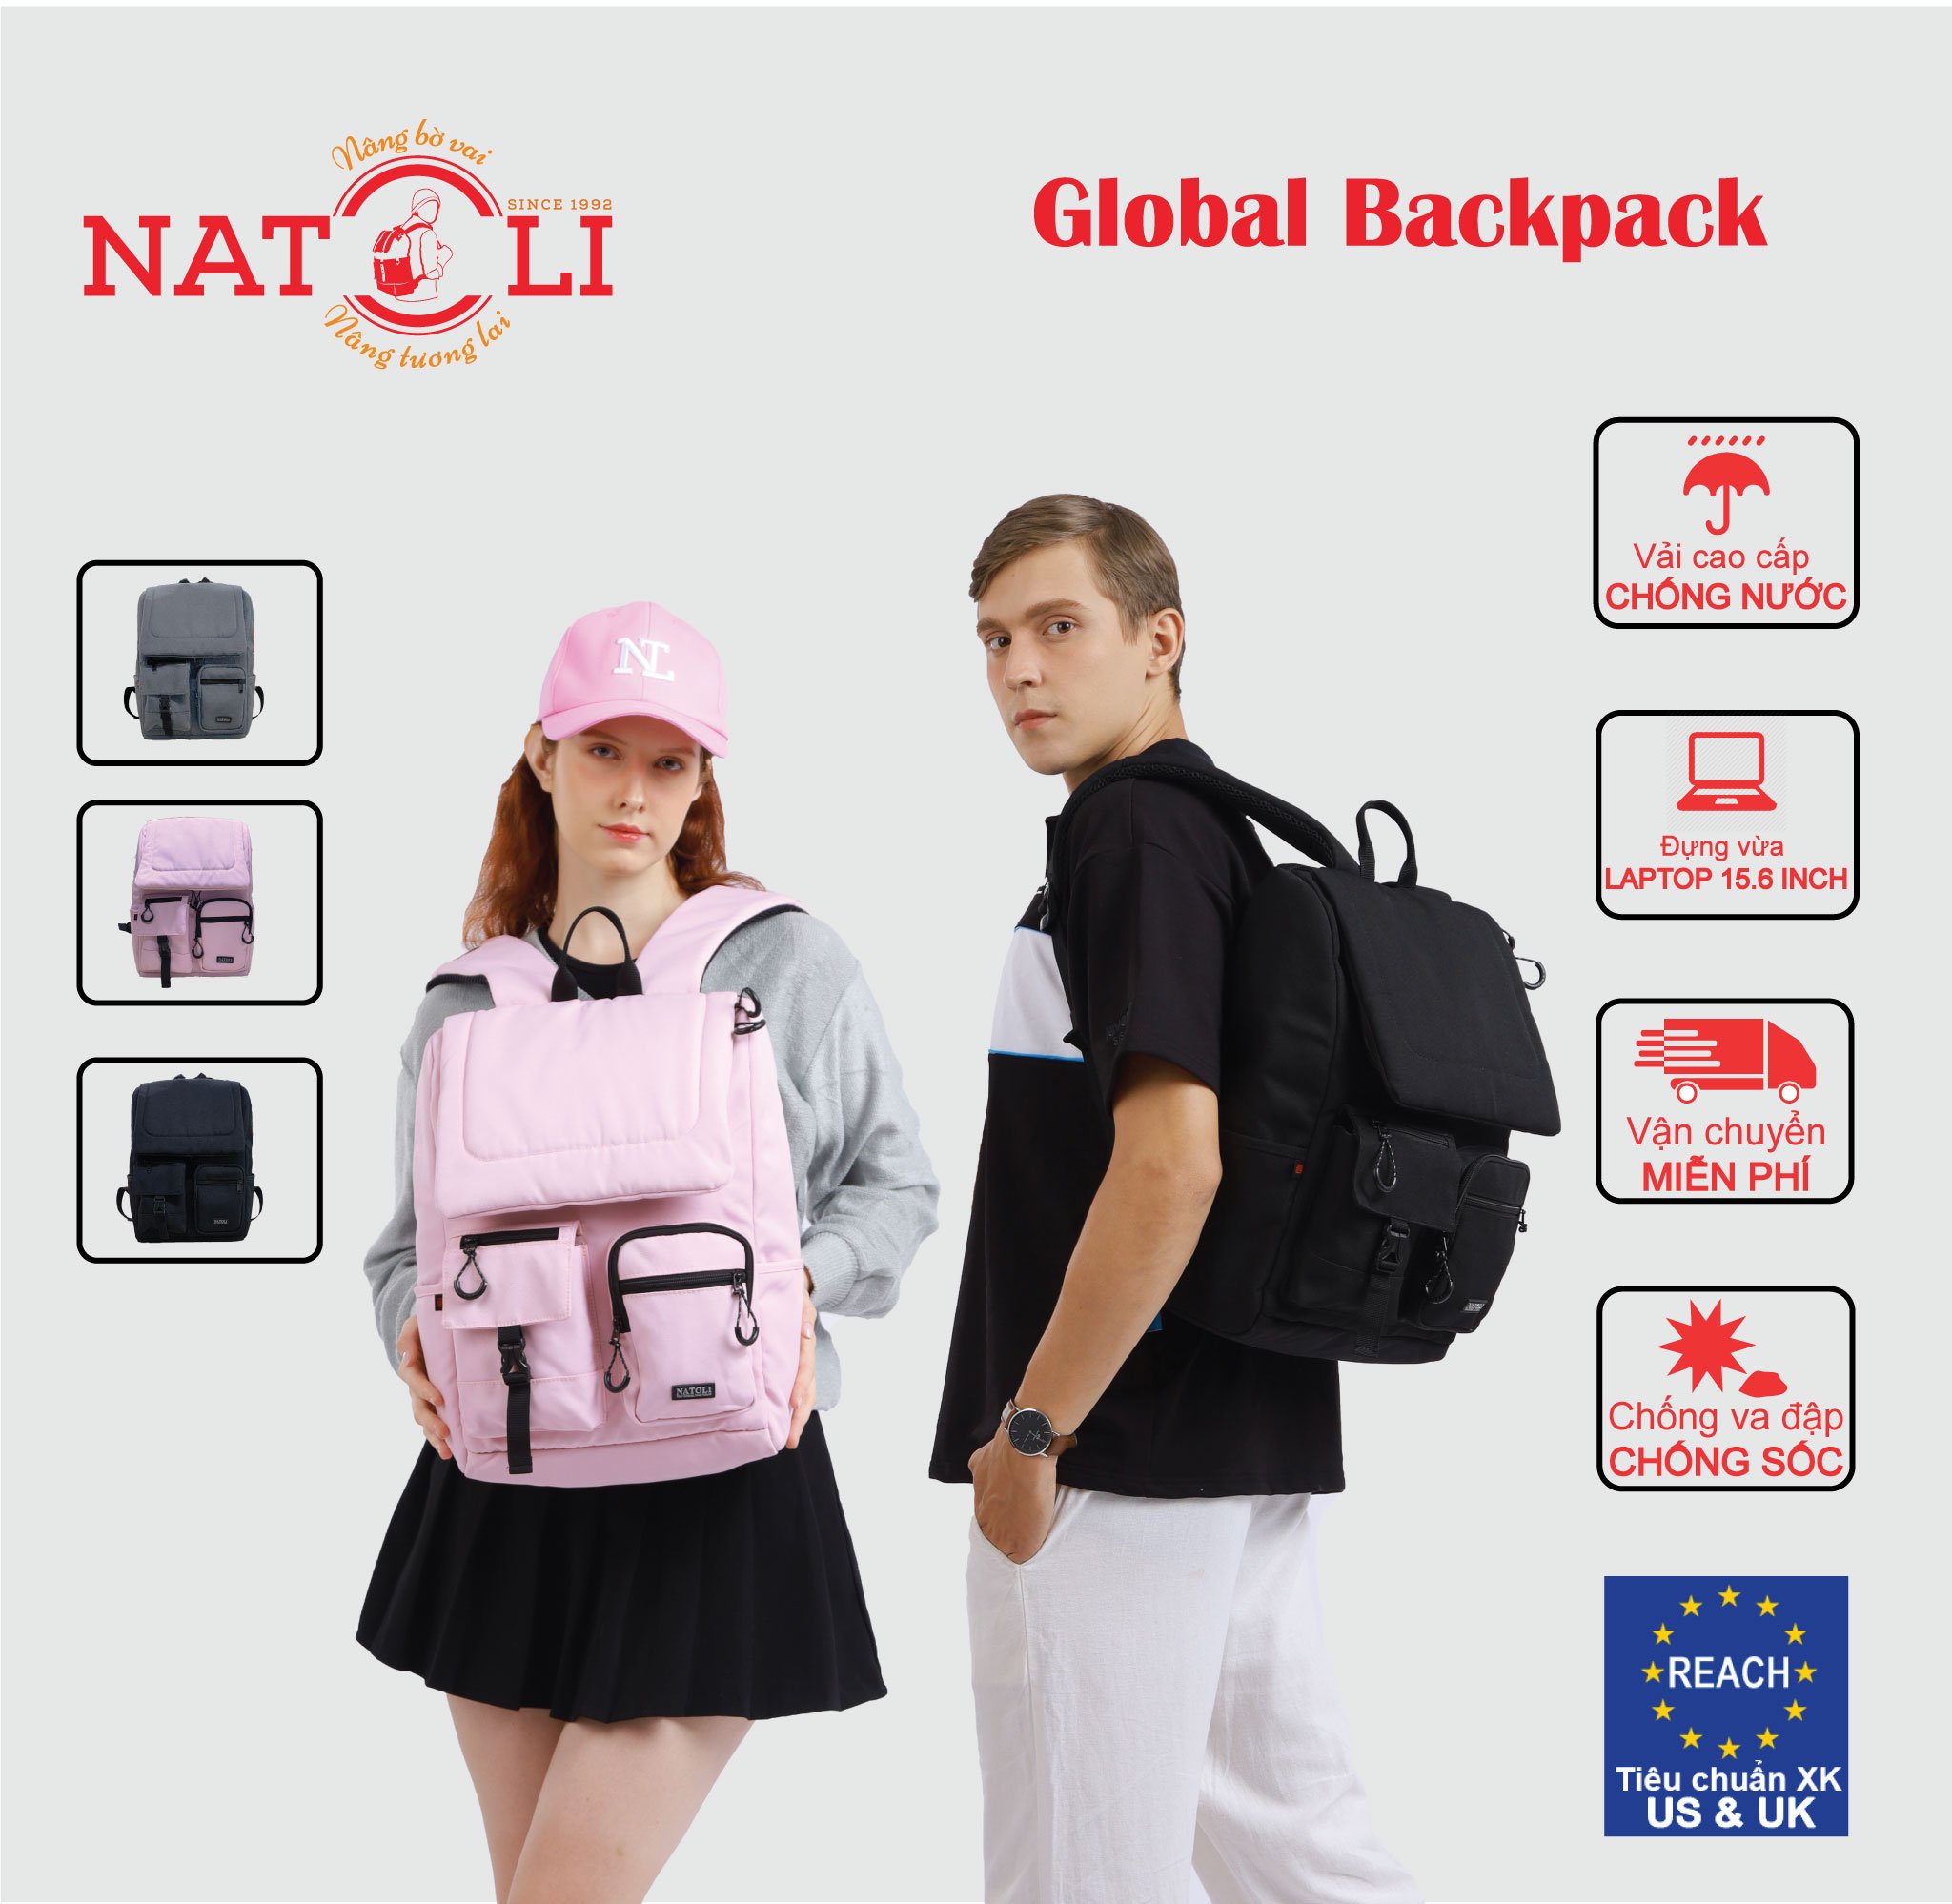 Balo đi học du lịch unisex Global Backpack B8 chính hãng NATOLI chất vải canvas kháng nước nhiều ngăn basic cao cấp